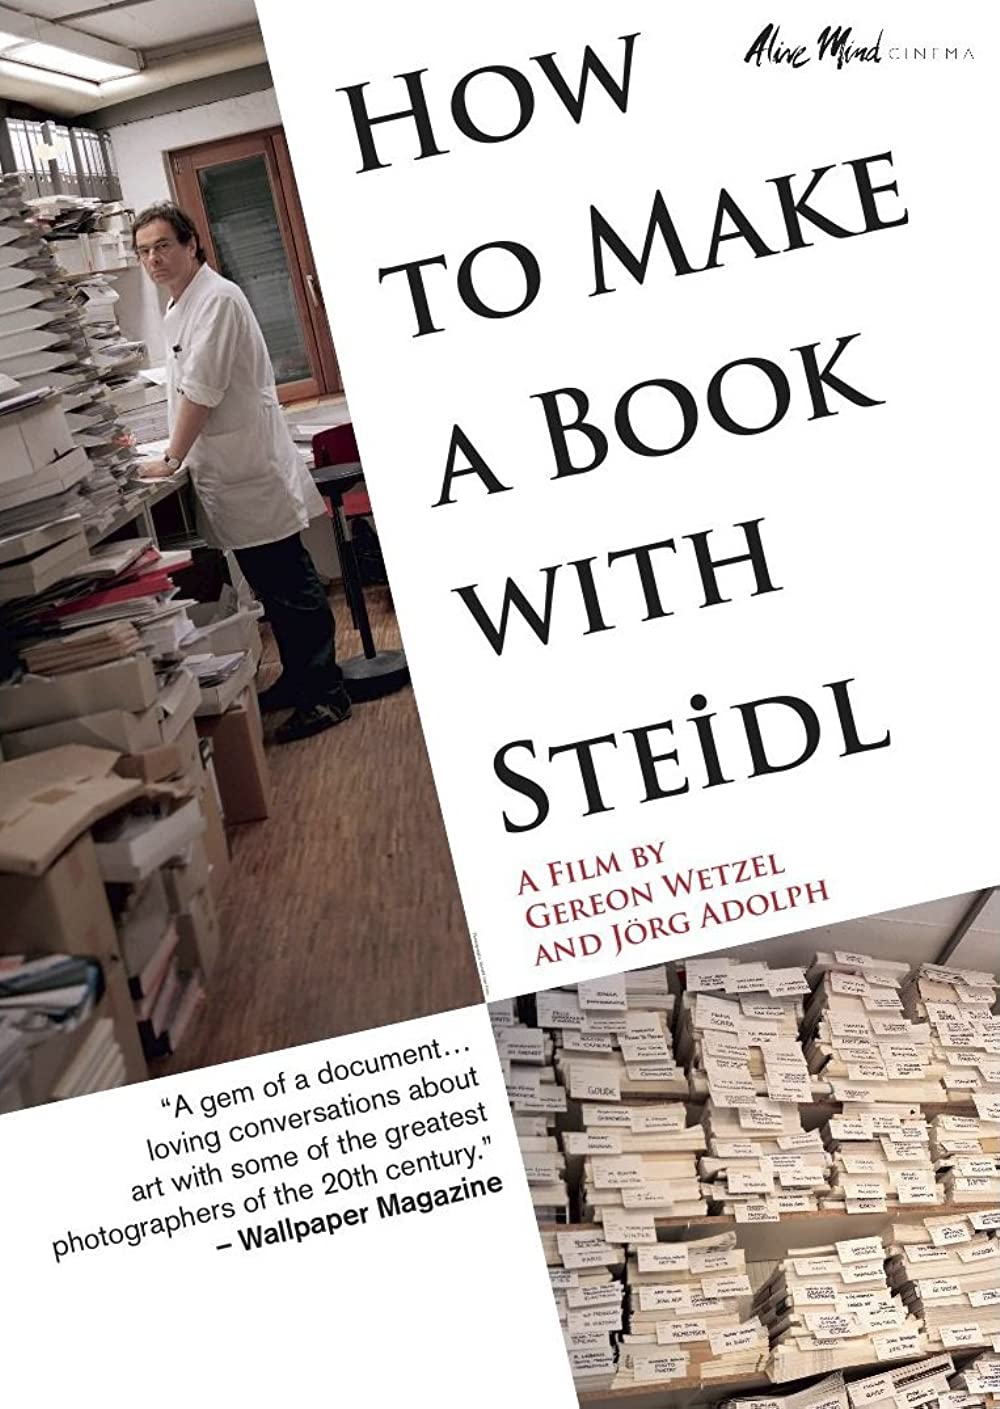 Filmbeschreibung zu How to Make a Book with Steidl